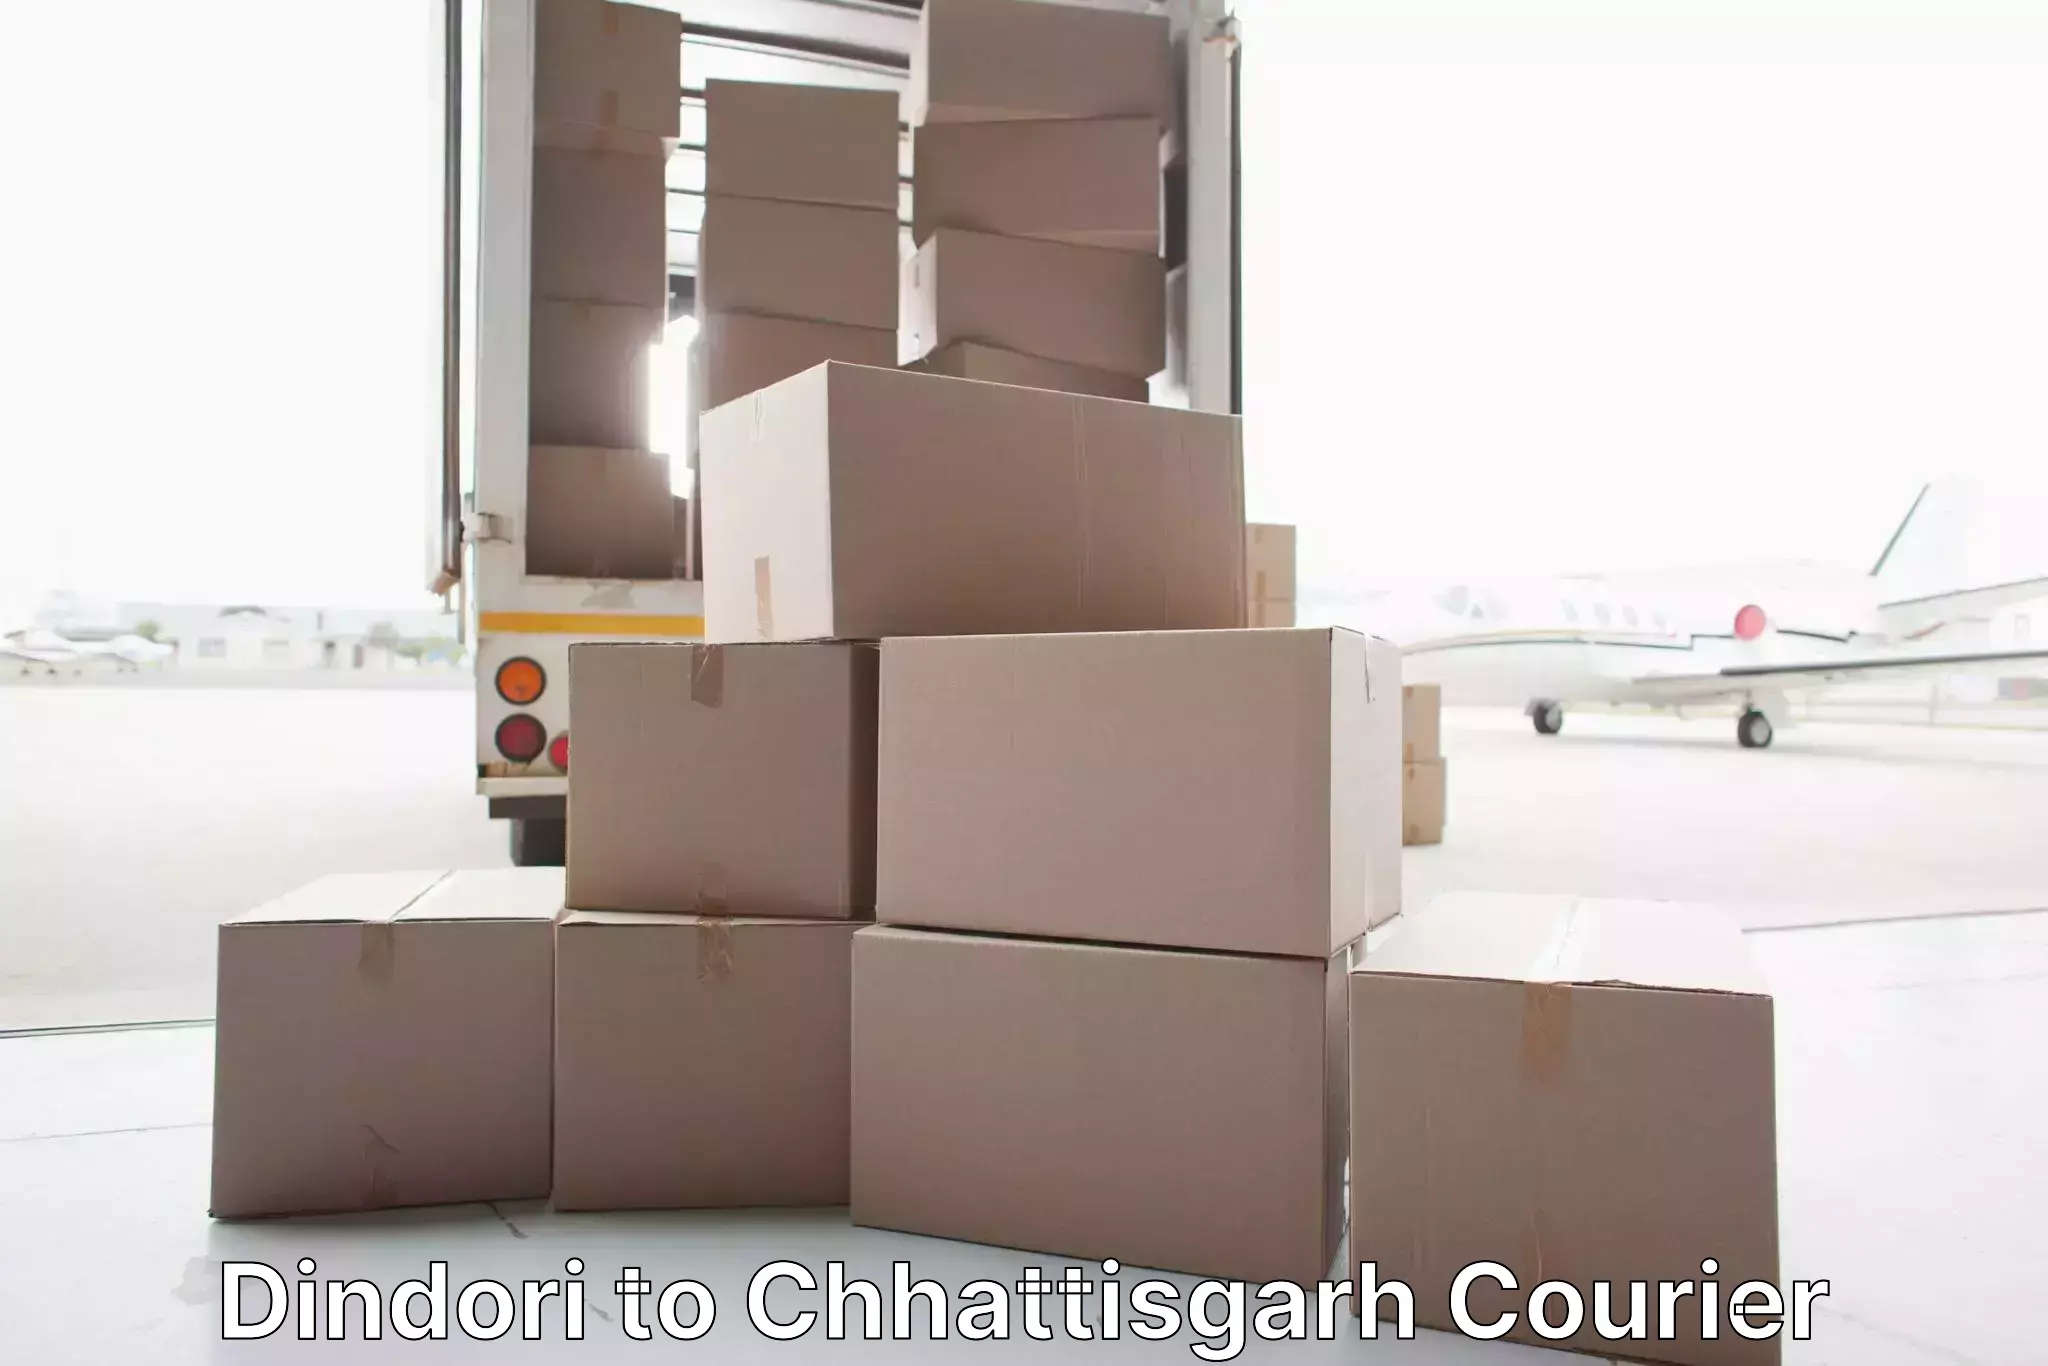 Furniture moving experts Dindori to Raipur